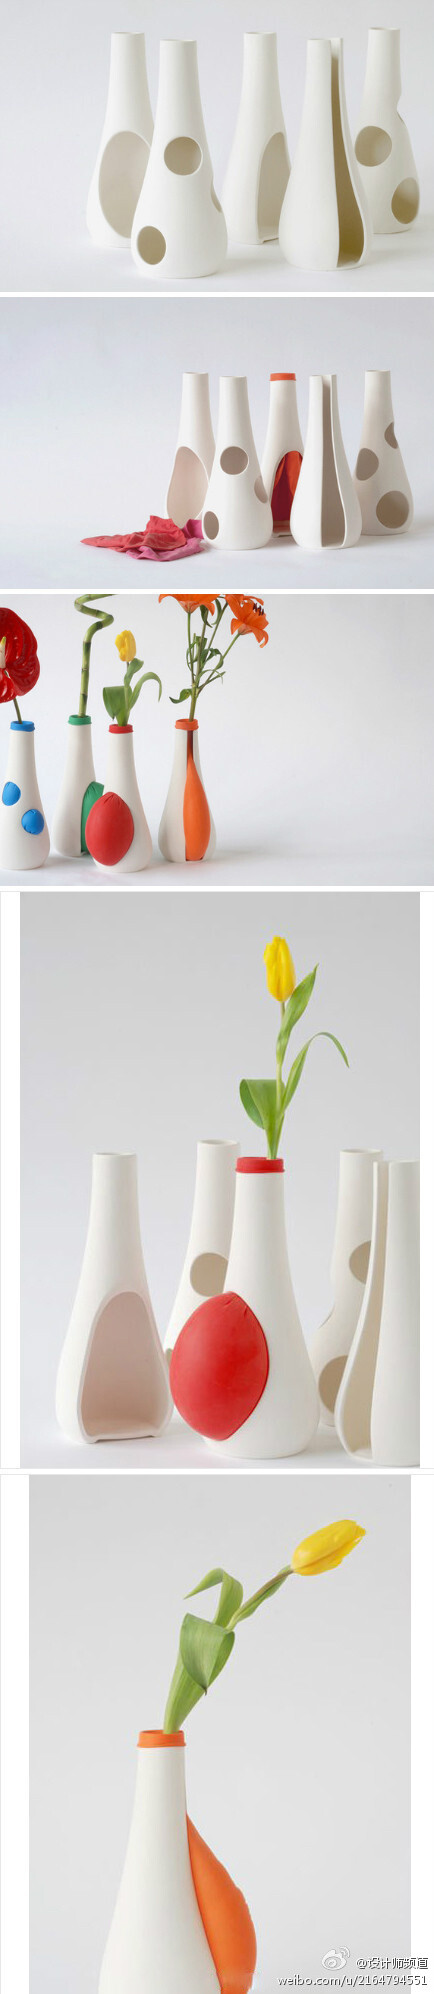 可以膨胀的花瓶，放置在陶瓷瓶内不同颜色的装满水的气球，穿孔而出，可以创造出各种各样不同的组合！